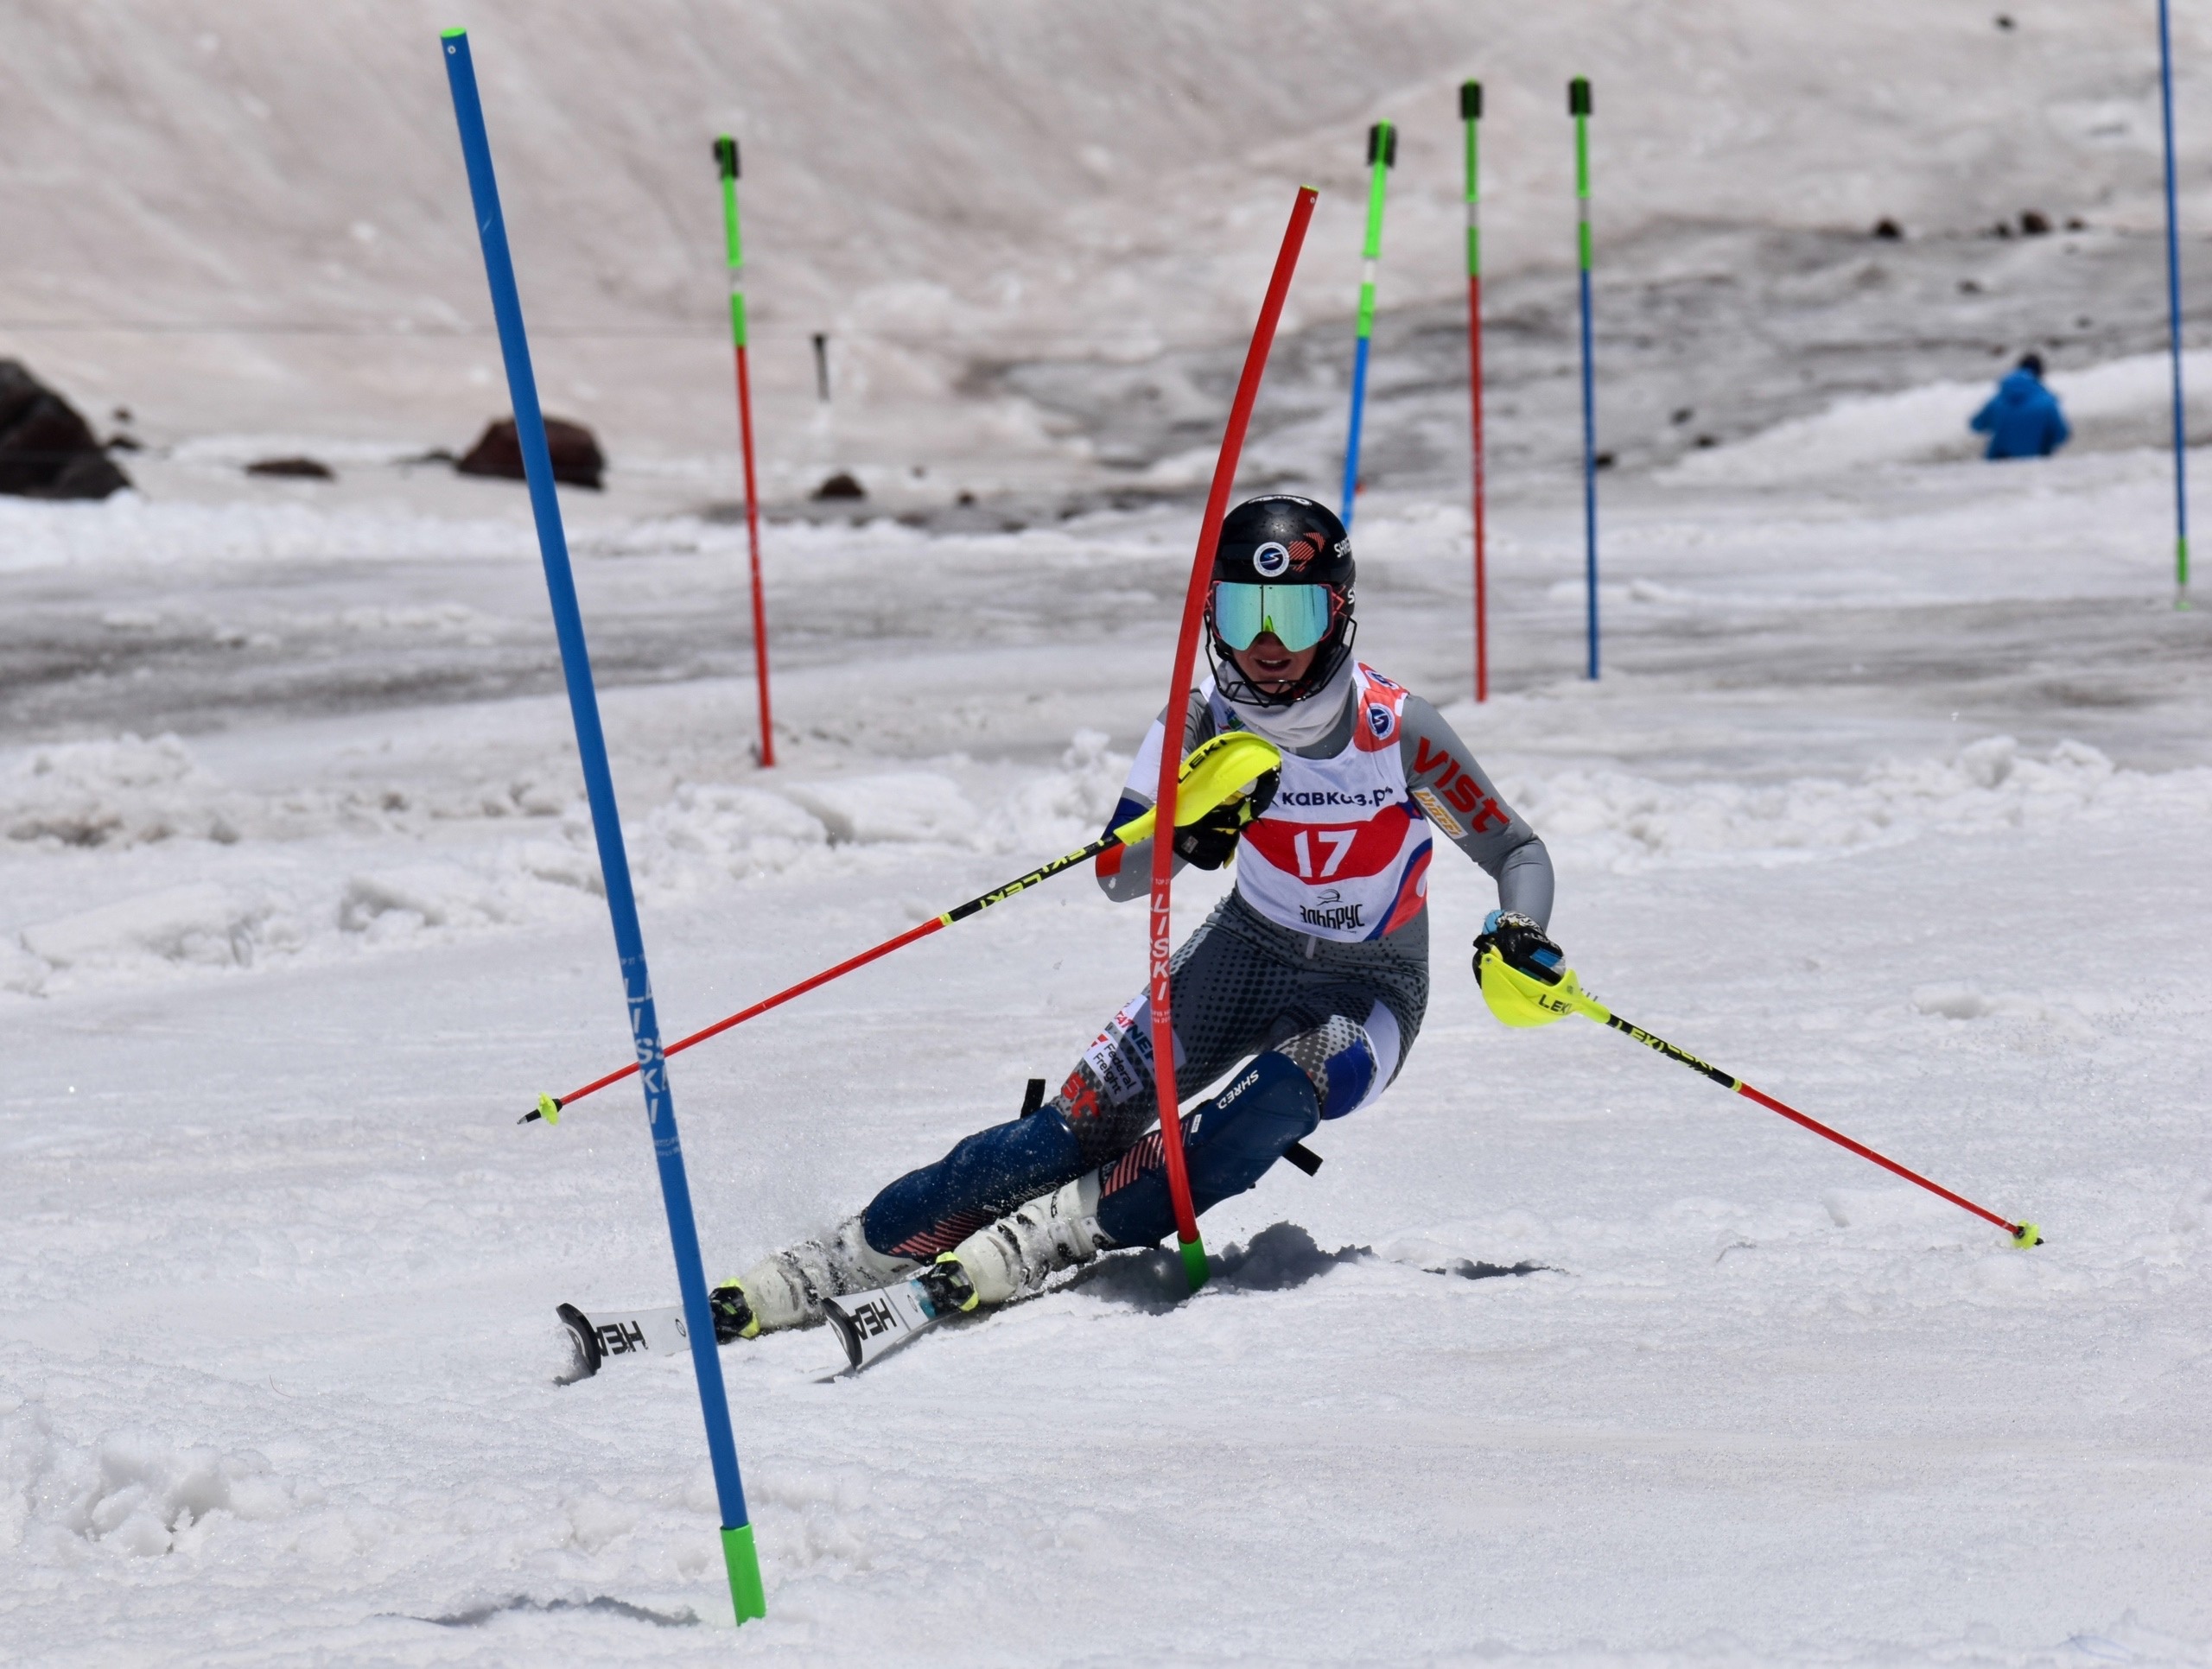 Фото: Российская федерация горнолыжного спорта